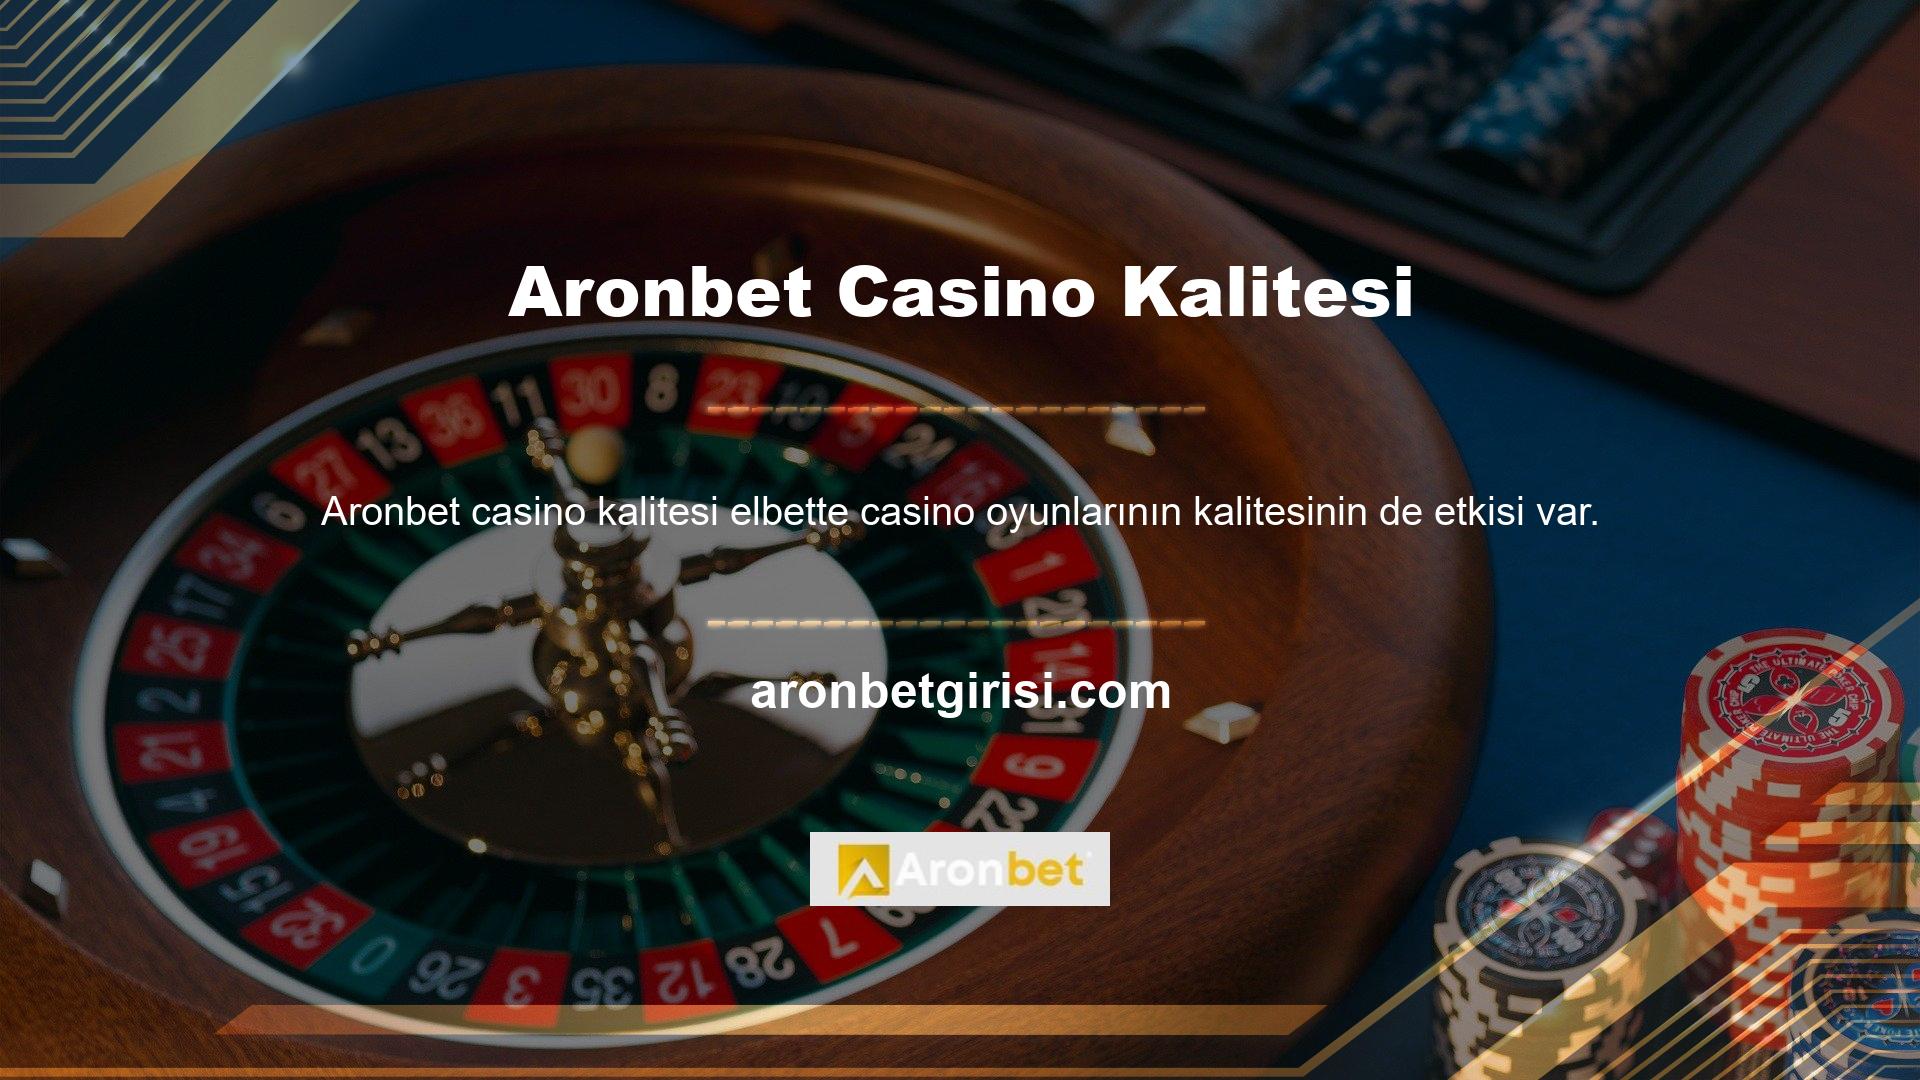 Bu kategorideki oyunların kalitesi göz önüne alındığında Aronbet Casino'nun kalitesi iyidir